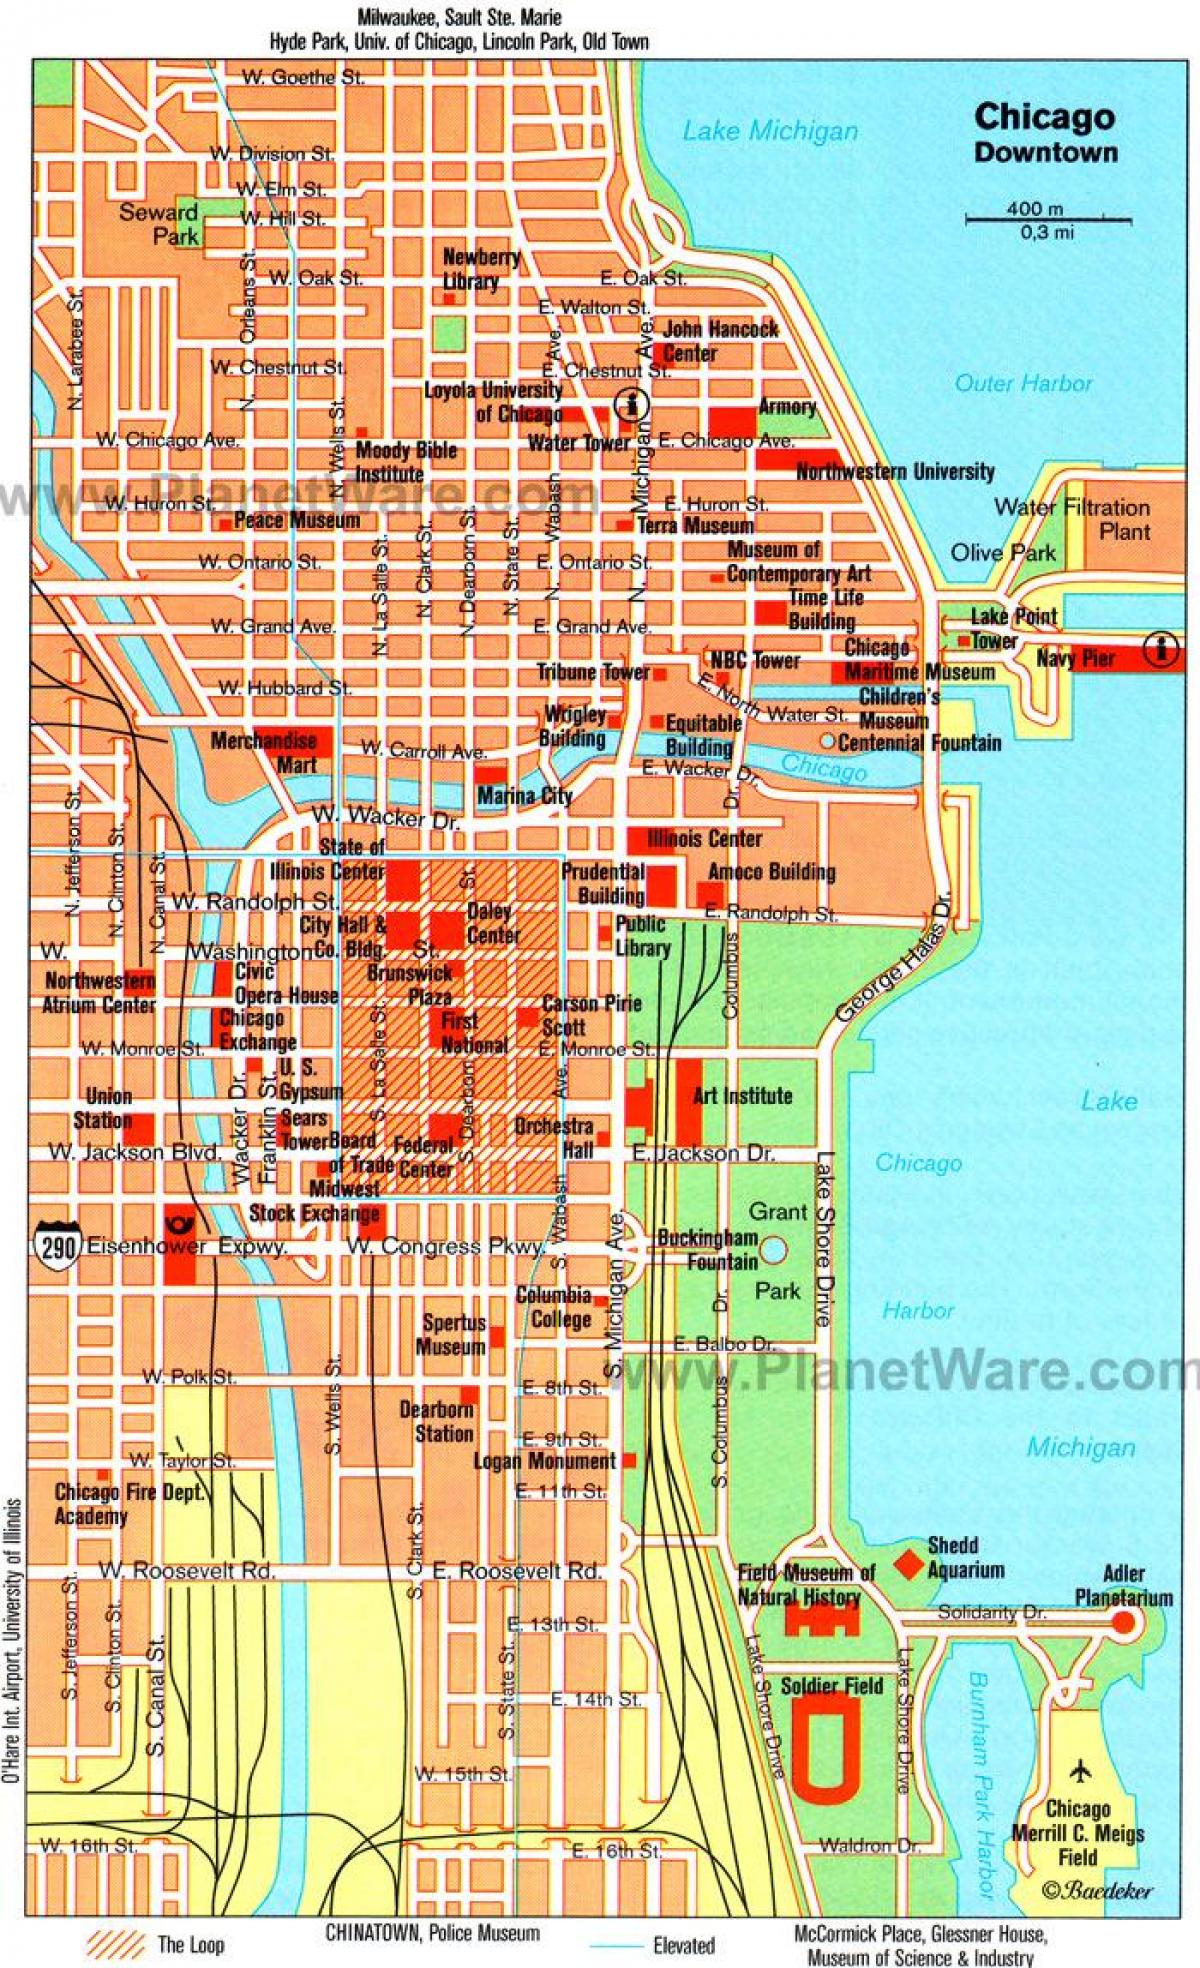 خريطة شيكاغو الجذب